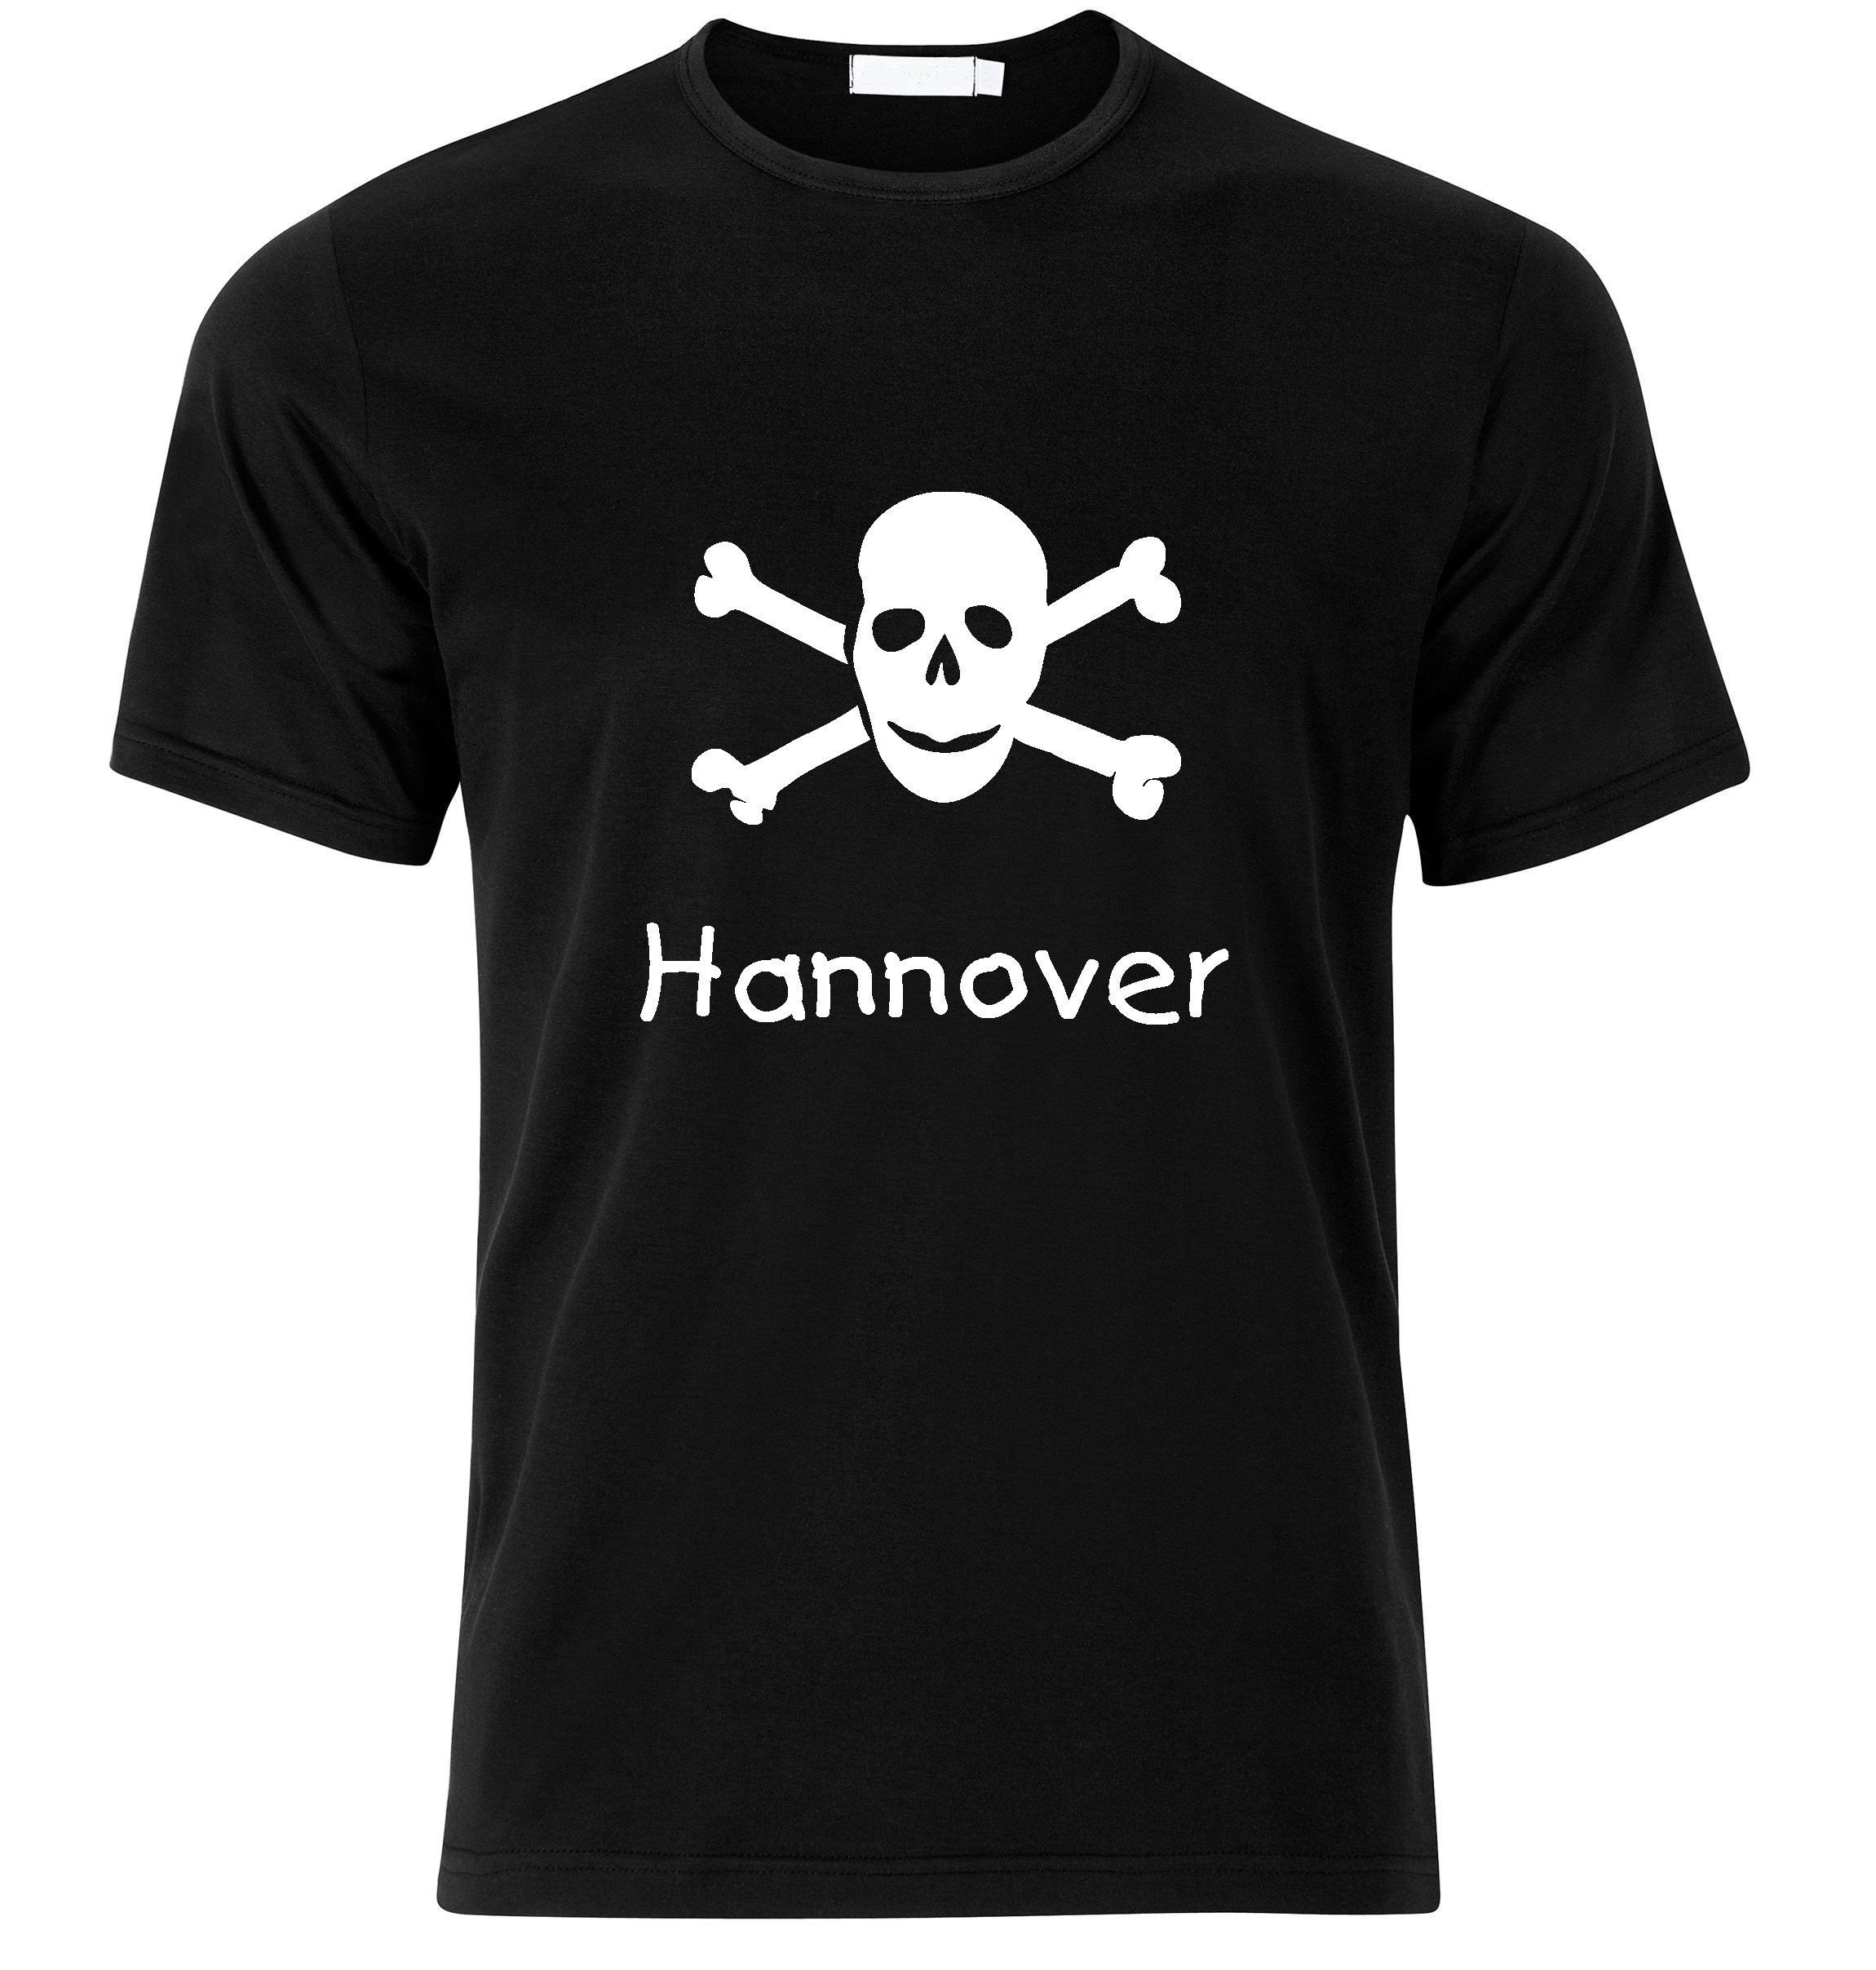 T-Shirt Hannover Jolly Roger, Totenkopf